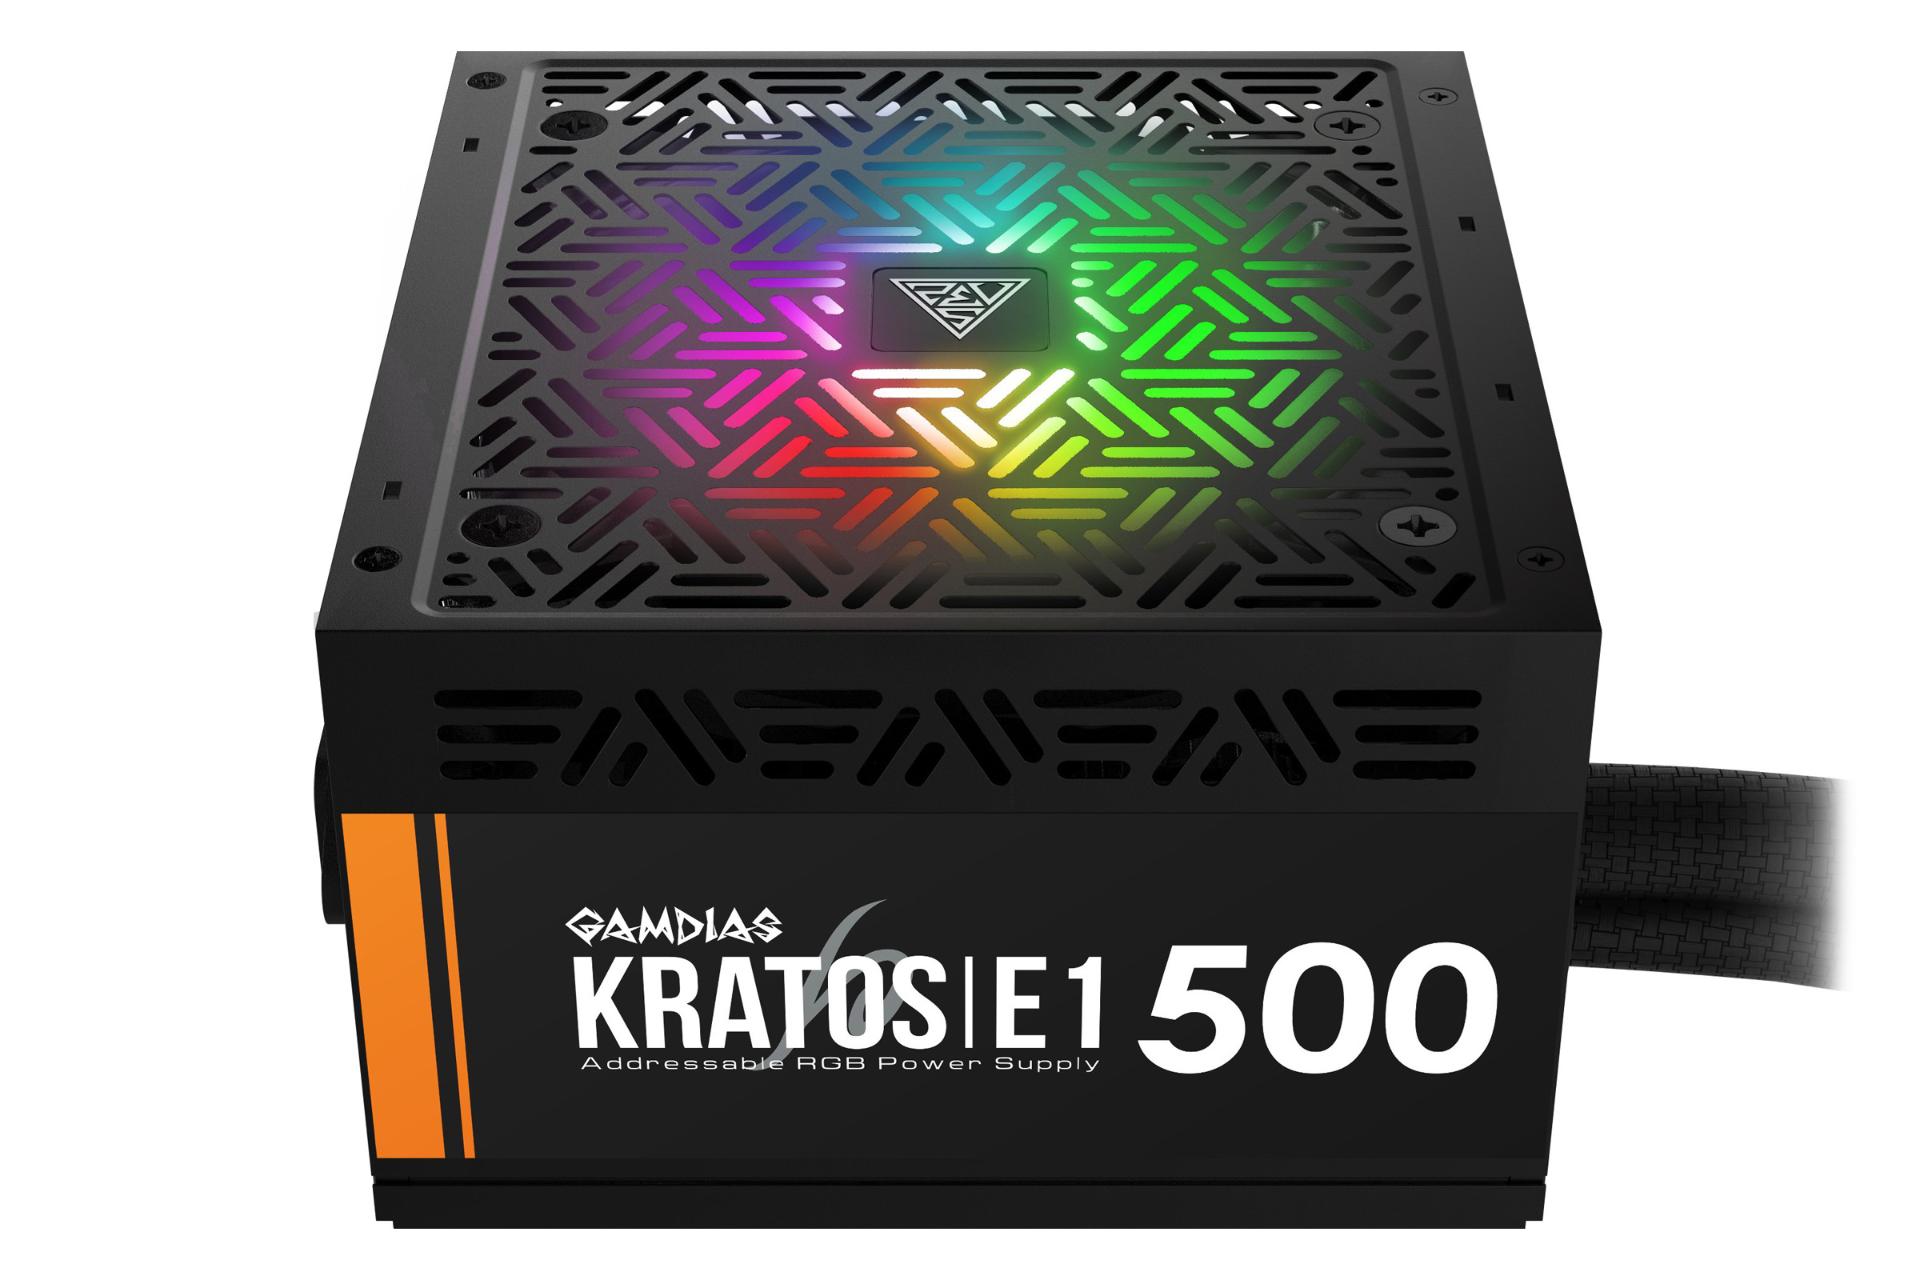 نمای پایین پاور کامپیوتر گیم دیاس KRATOS E1-500 با توان 500 وات